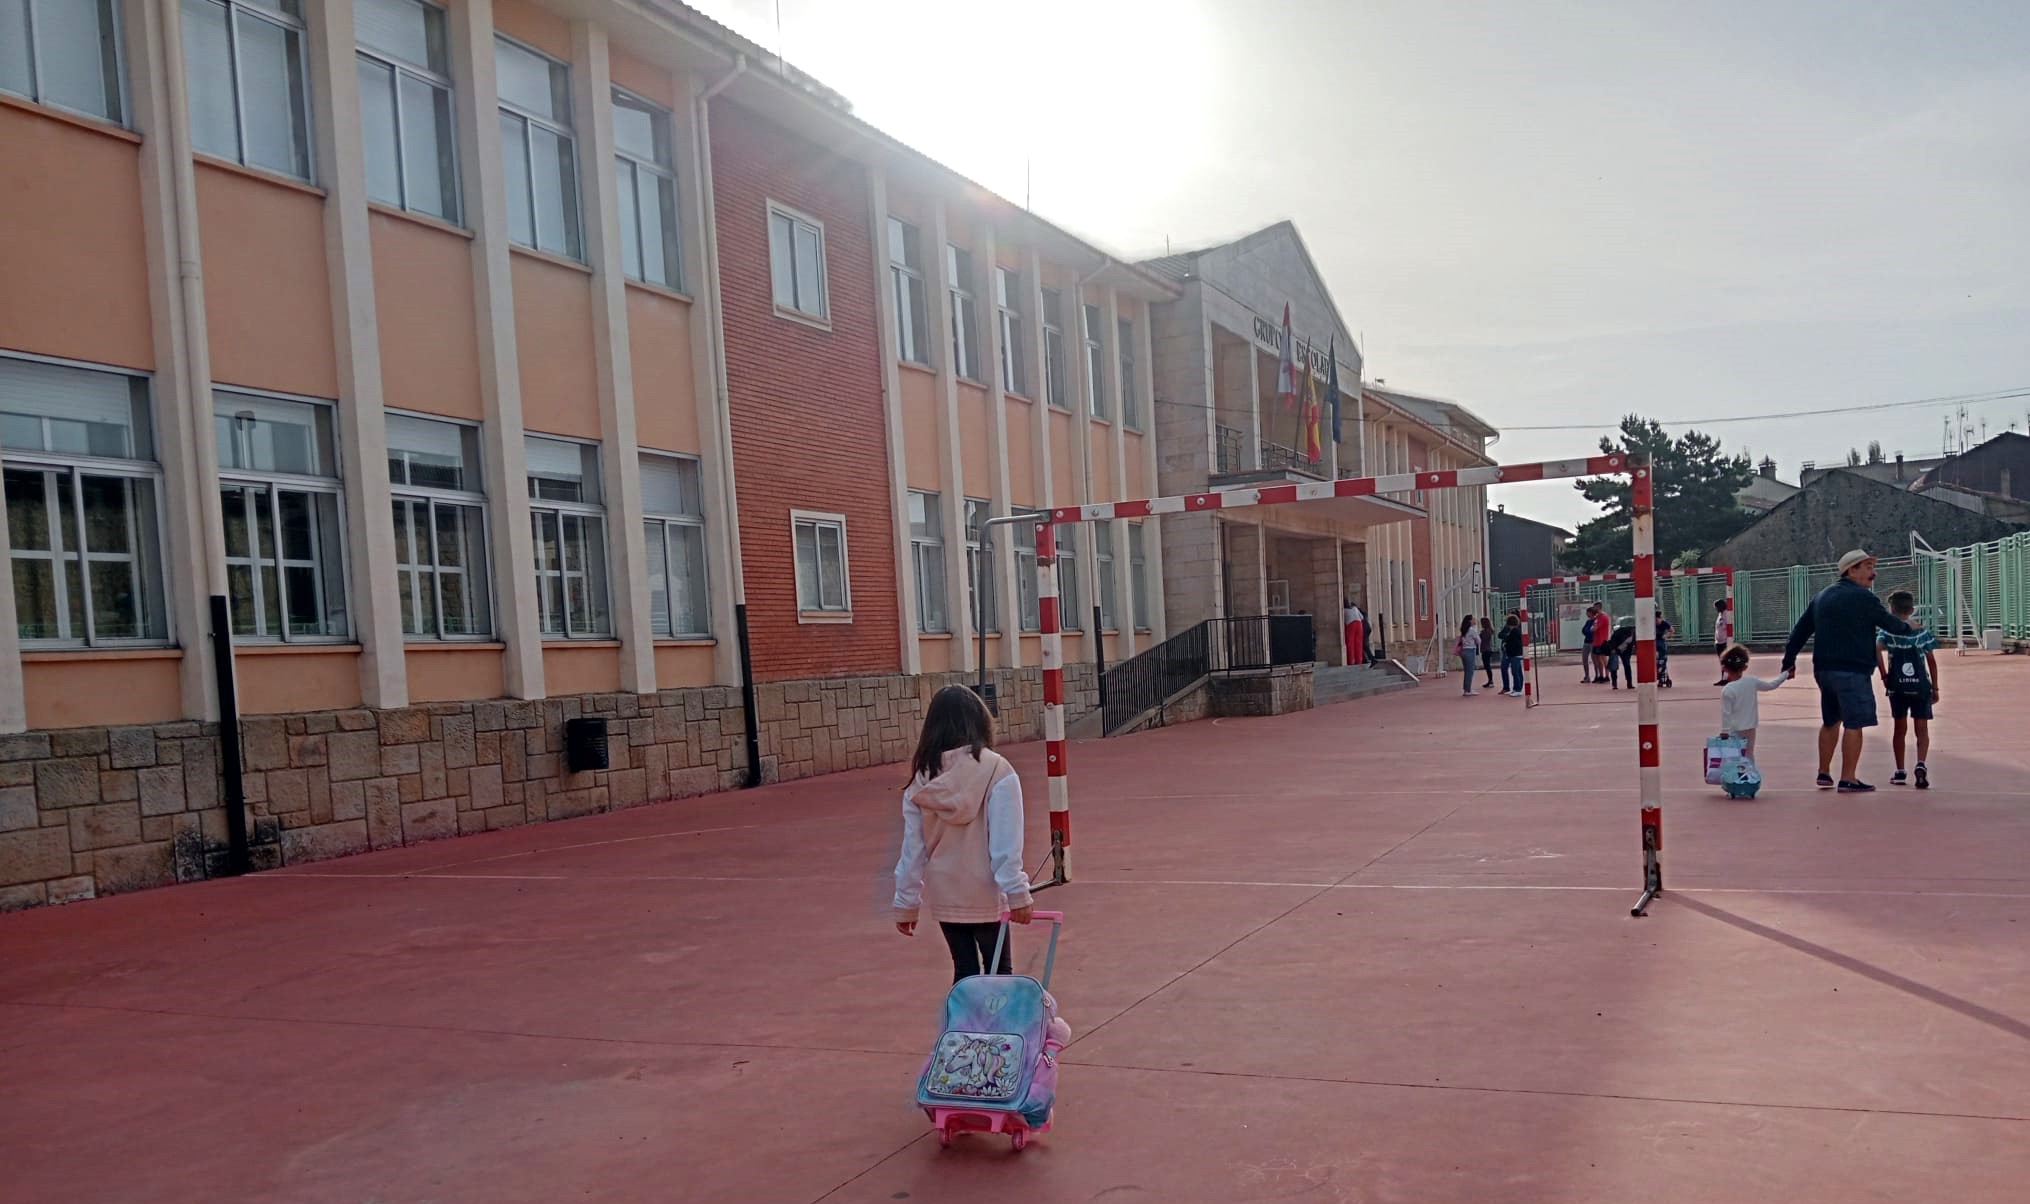 El colegio de Duruelo de la Sierra, el primero al que se incorporan los alumnos en el nuevo curso escolar